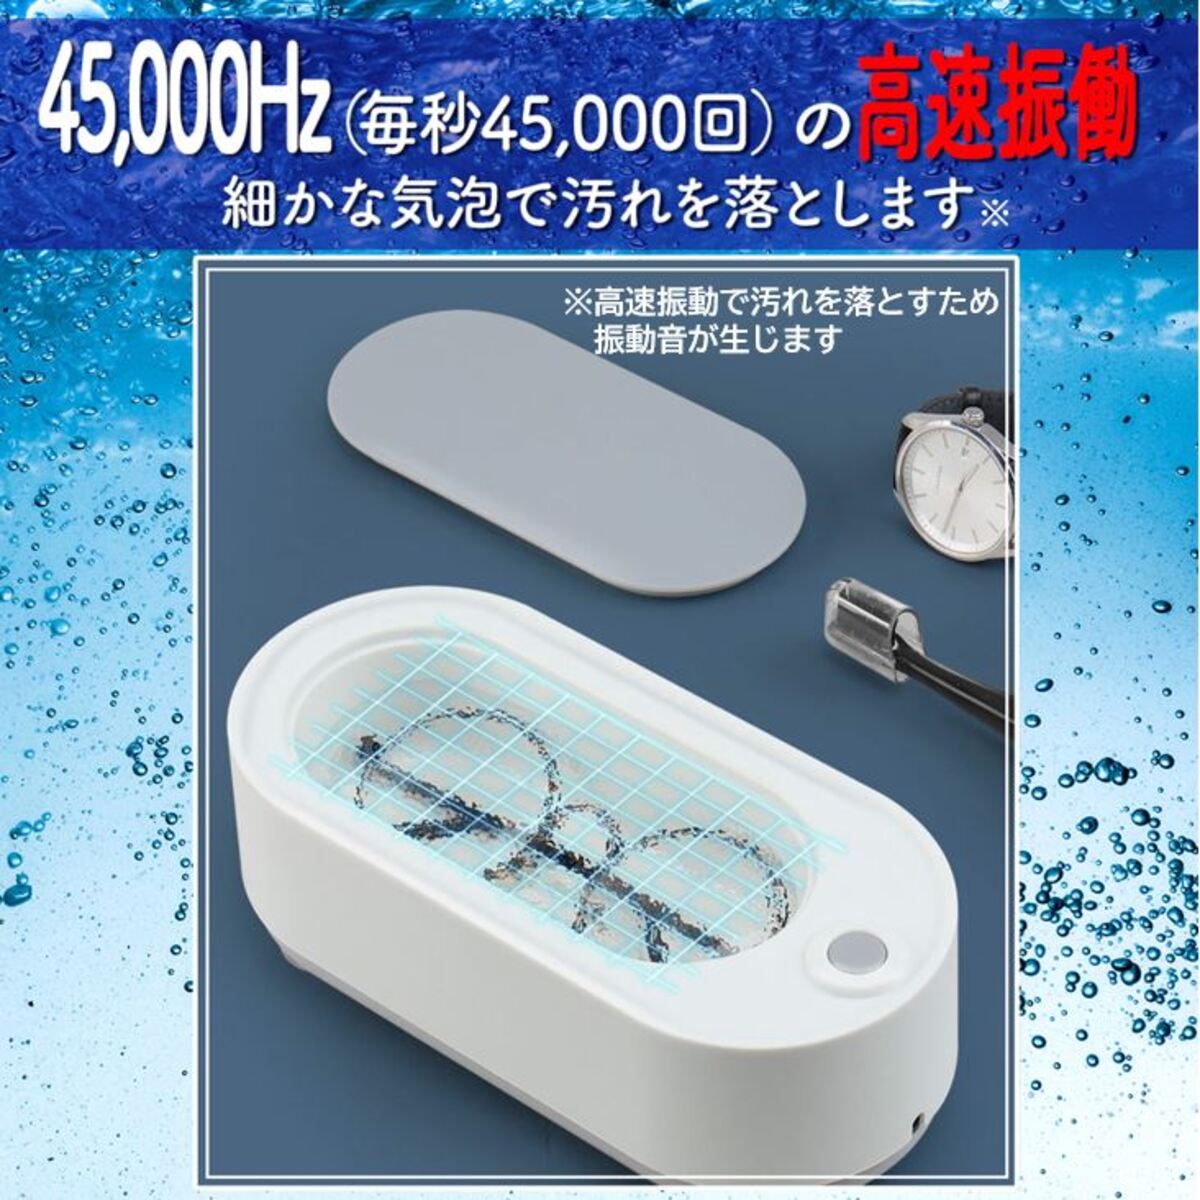 超音波洗浄機 メガネ クリーナー メガネ洗浄器 シンプル コンパクト 